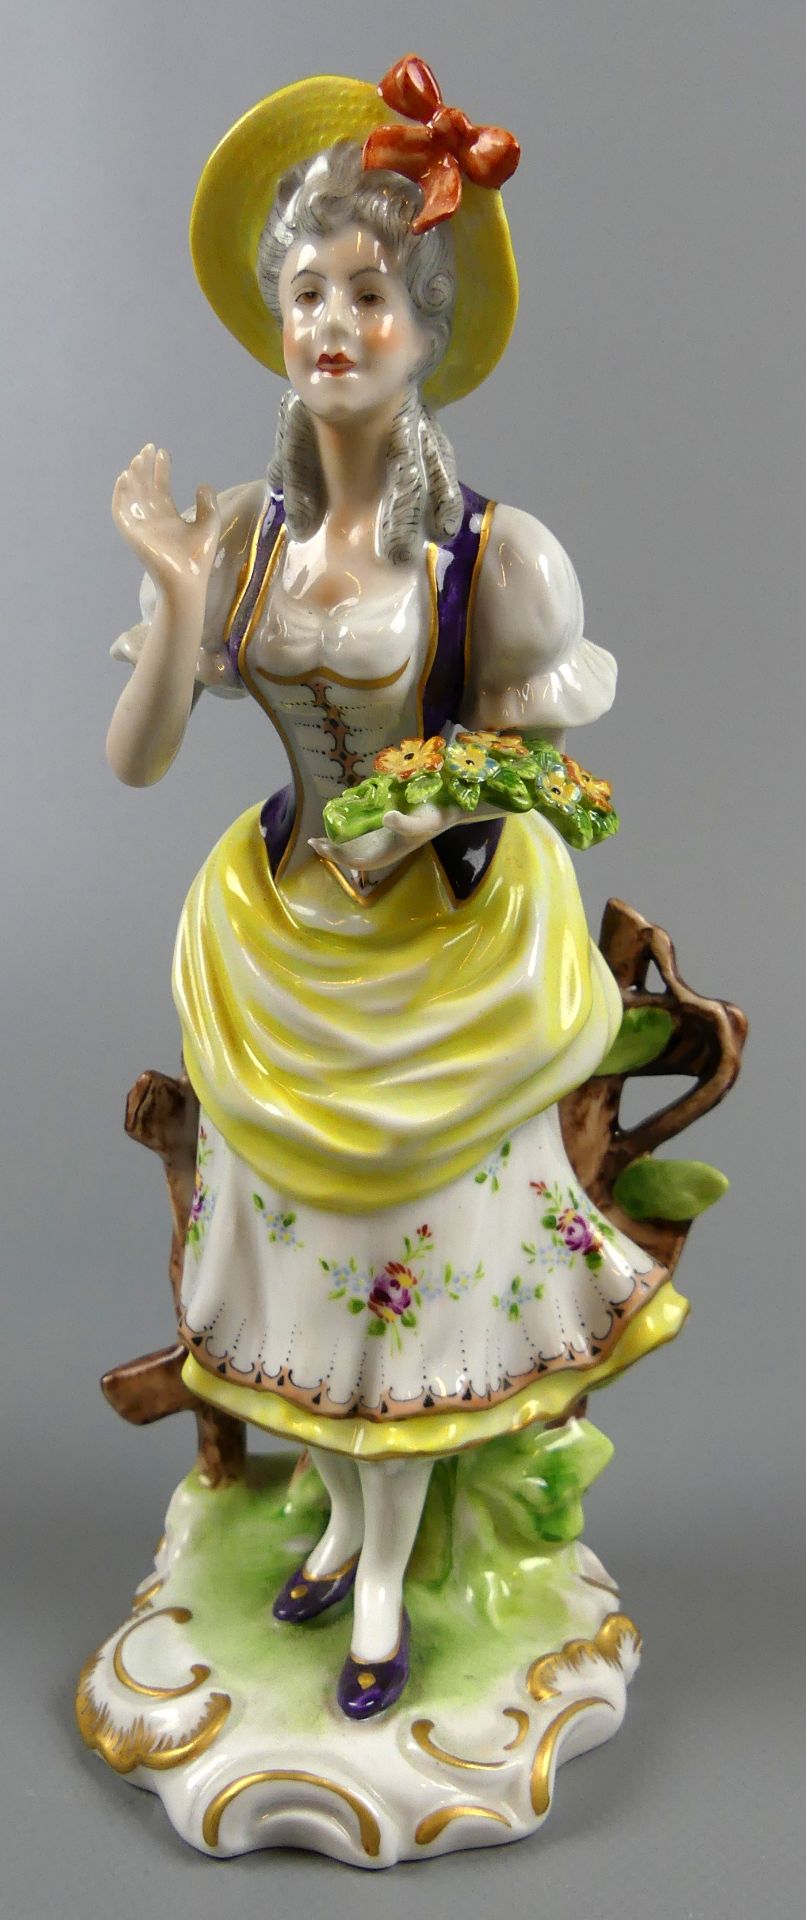 Porzellanfigur, "Dame mit Blumen", Unter Weißbach, 18'32, H. ca. 22 cm